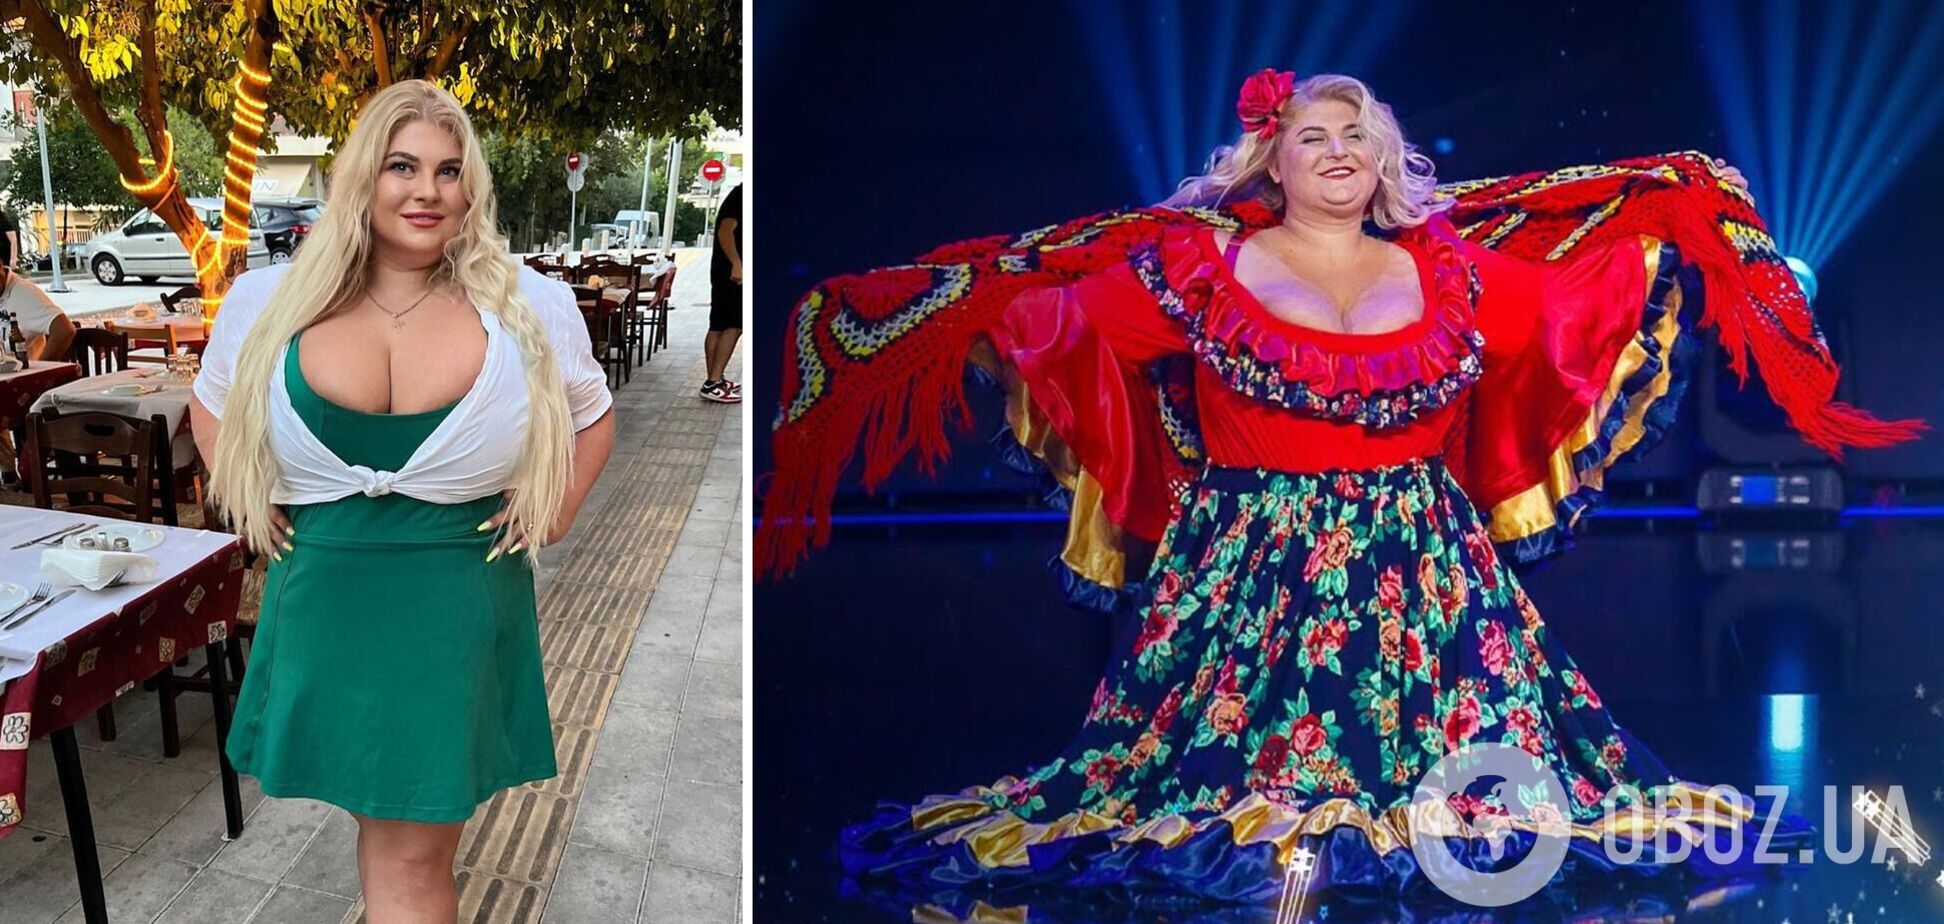 Как изменилась и где сейчас модель с 15 размером груди и звезда шоу 'Україна має талант' Инна Горячковская